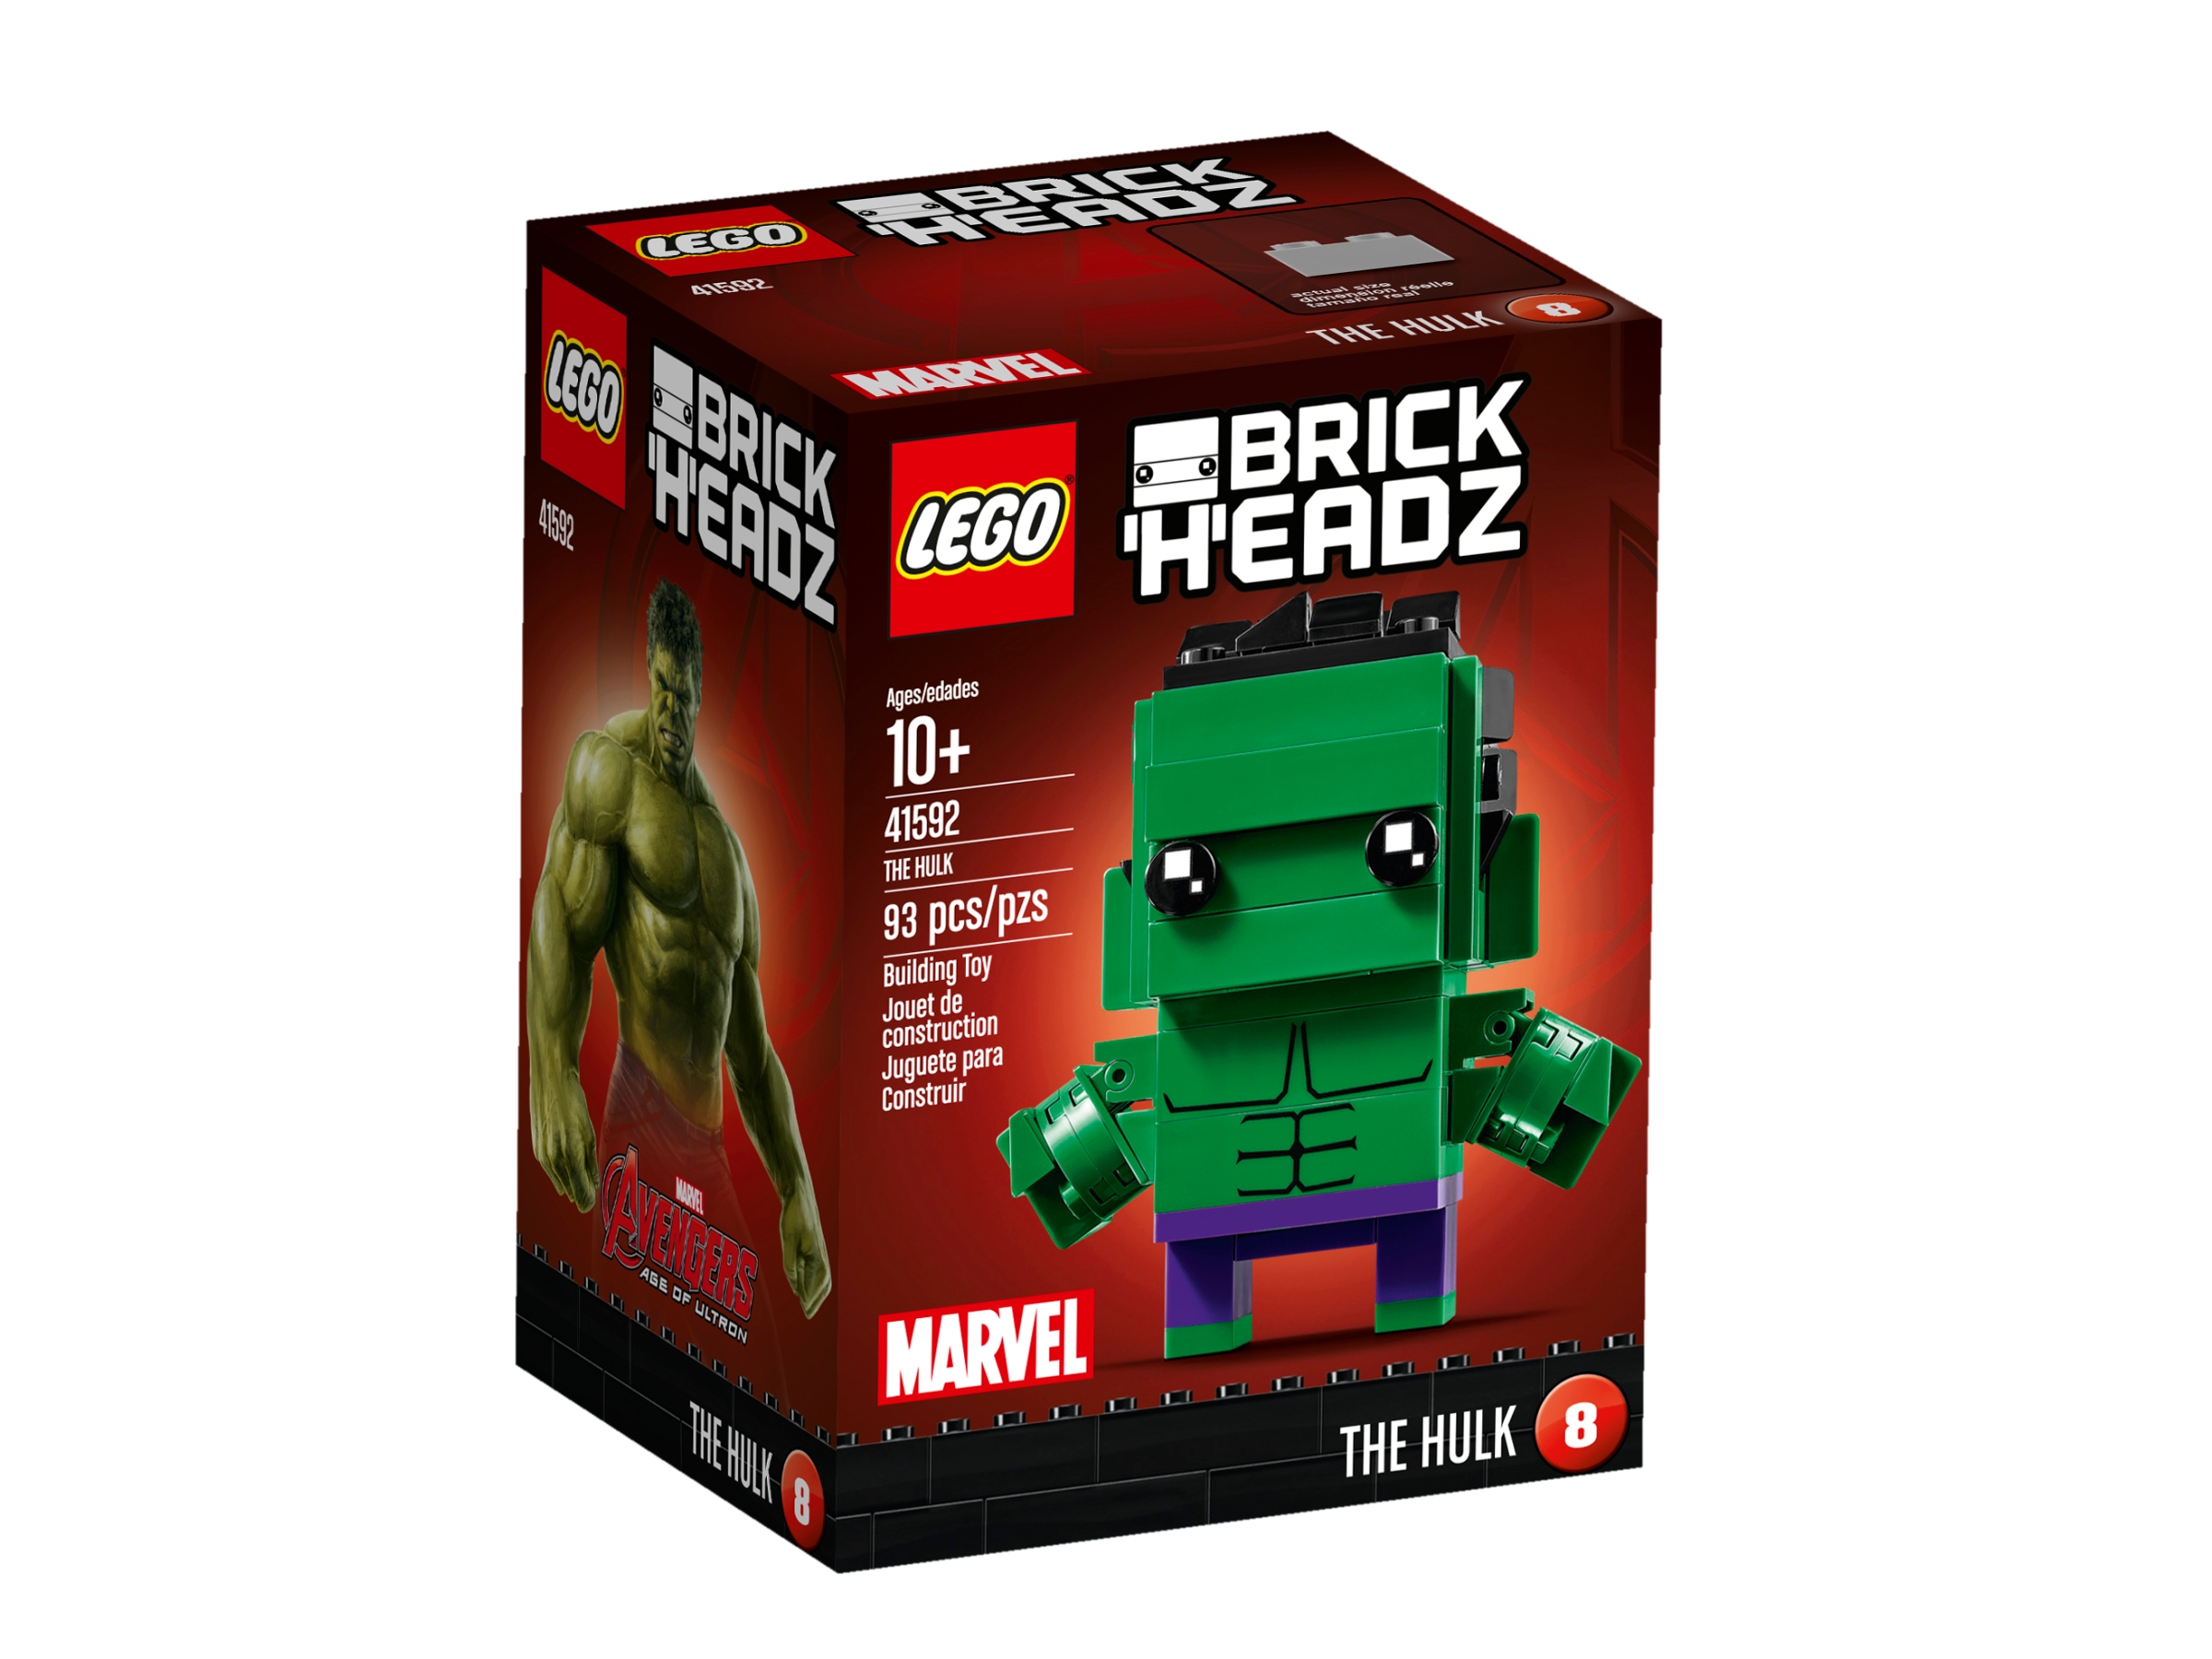 The Hulk 41592, BrickHeadz